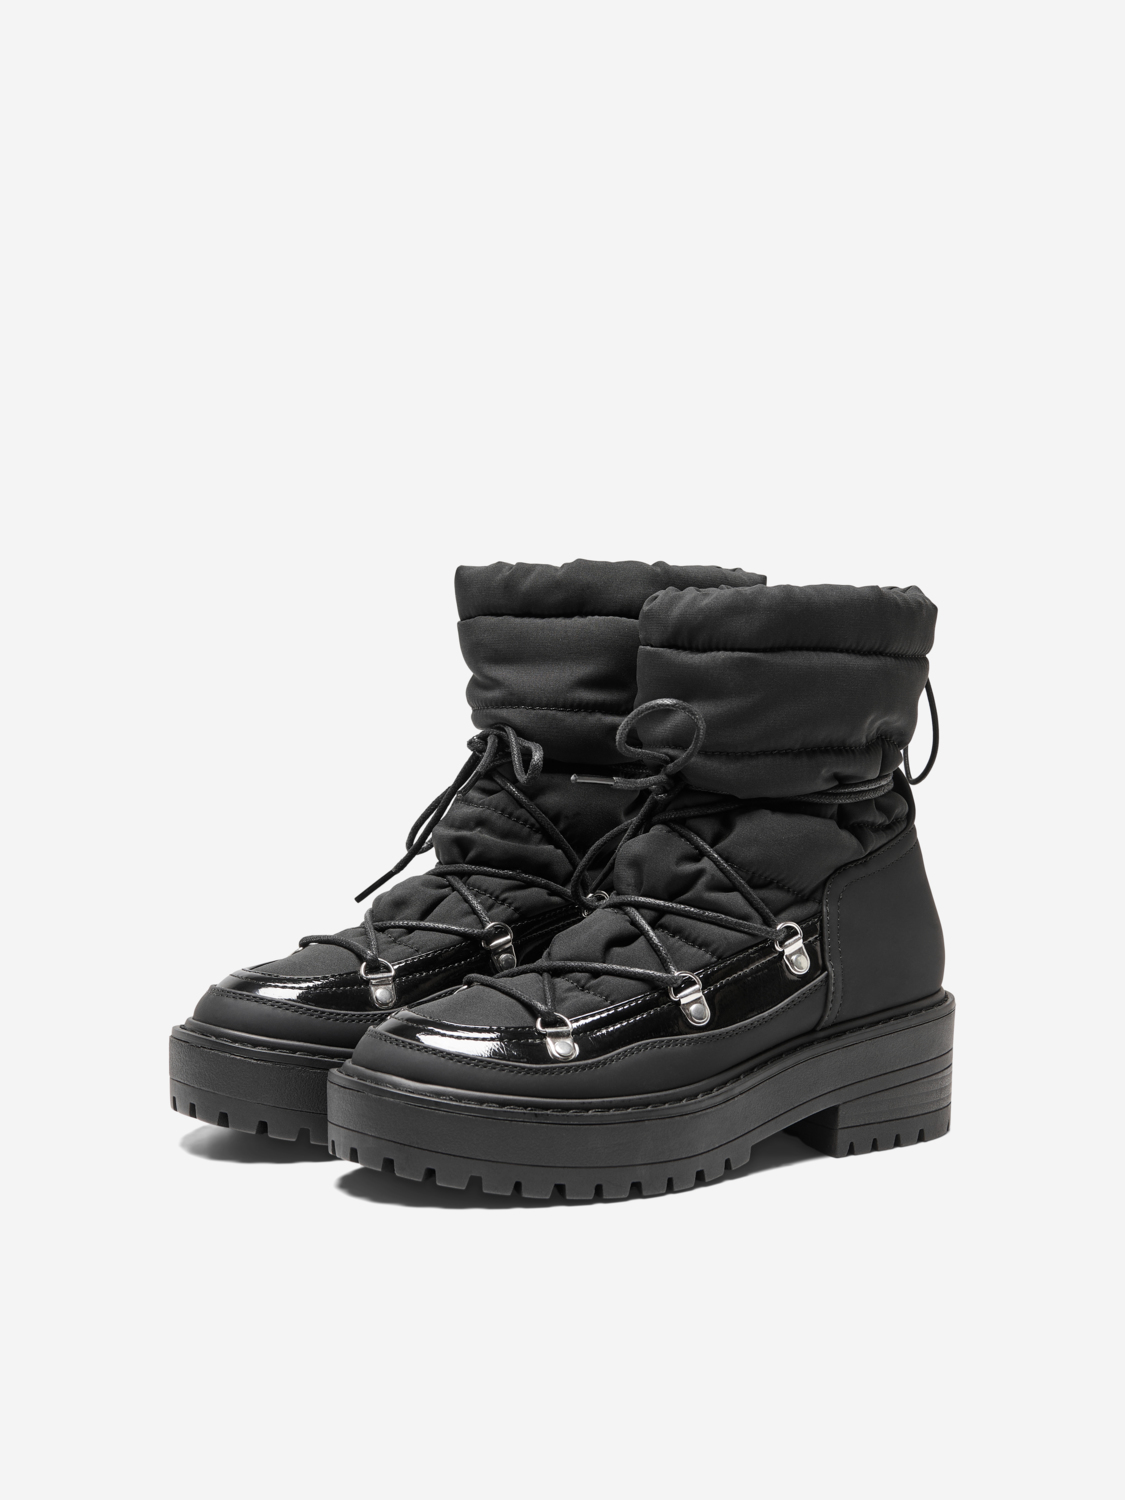 Brandie moon boots, BLACK, large